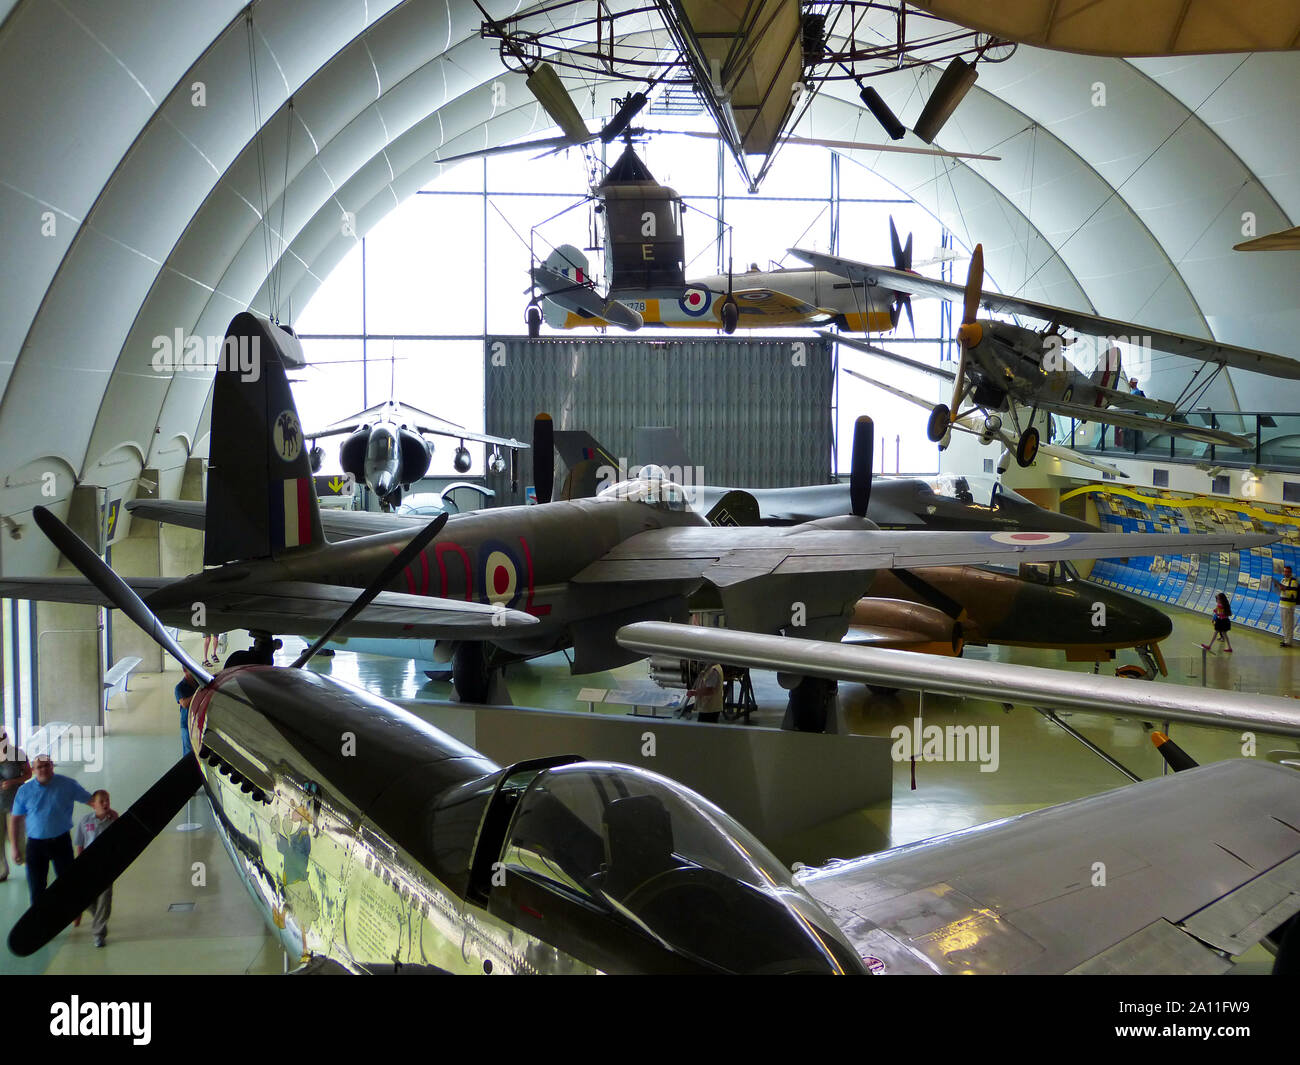 Royal Air Force (RAF) Museo / Hendon, London, Regno Unito - 29 Giugno 2014: Real aeroplani storici provenienti da tutto il mondo sul display. Foto Stock